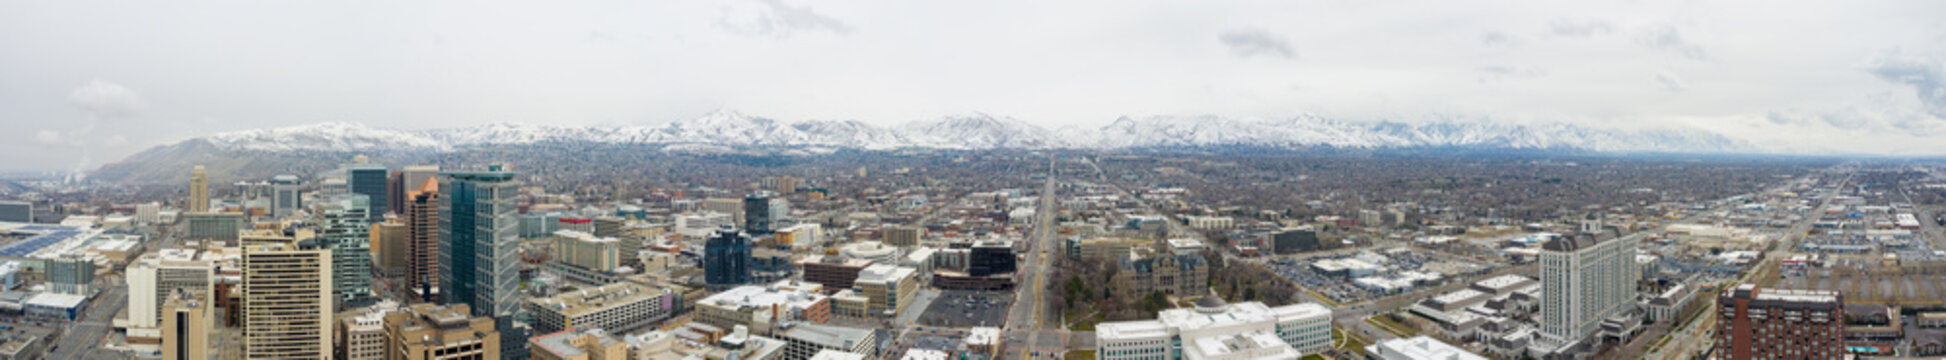 Aerial drone panorama image Salt Lake City Utah